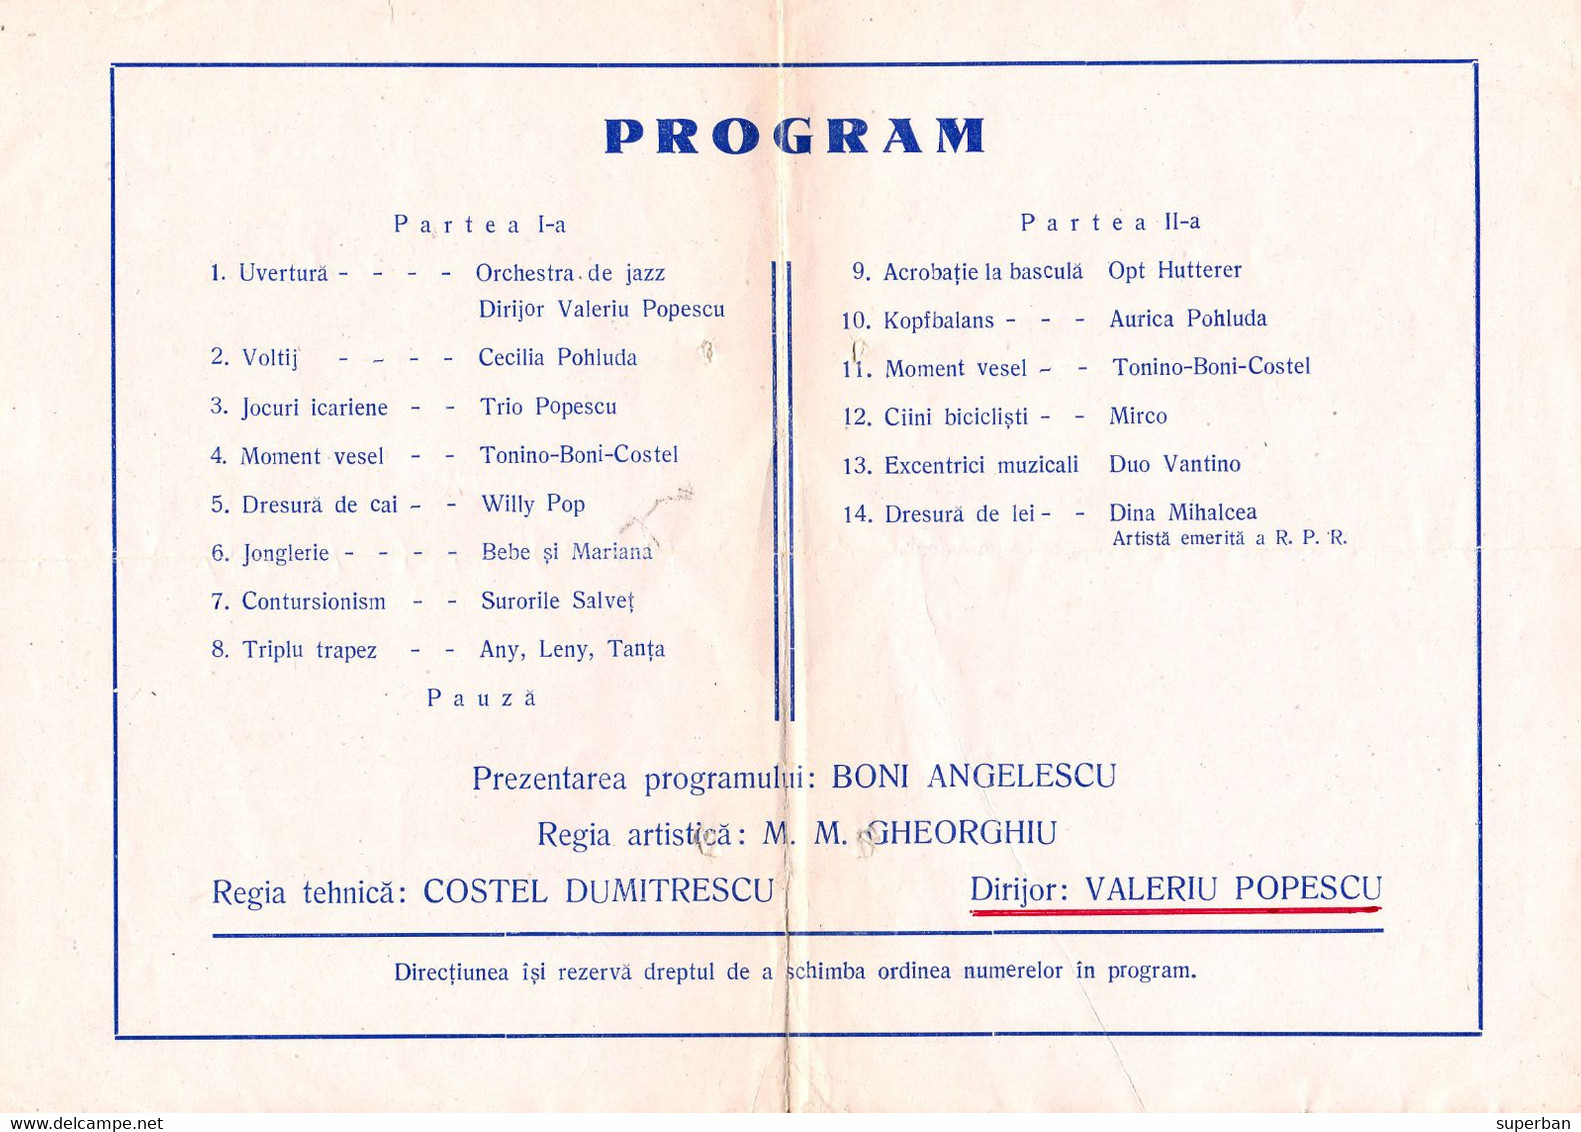 PUBLICITÉ / ADVERTISING - ROMANIA : CIRQUE De BUCAREST / STATE CIRCUS Of BUCHAREST - DÉPLIANT / PROGRAMME 1957 (ah795) - Circo